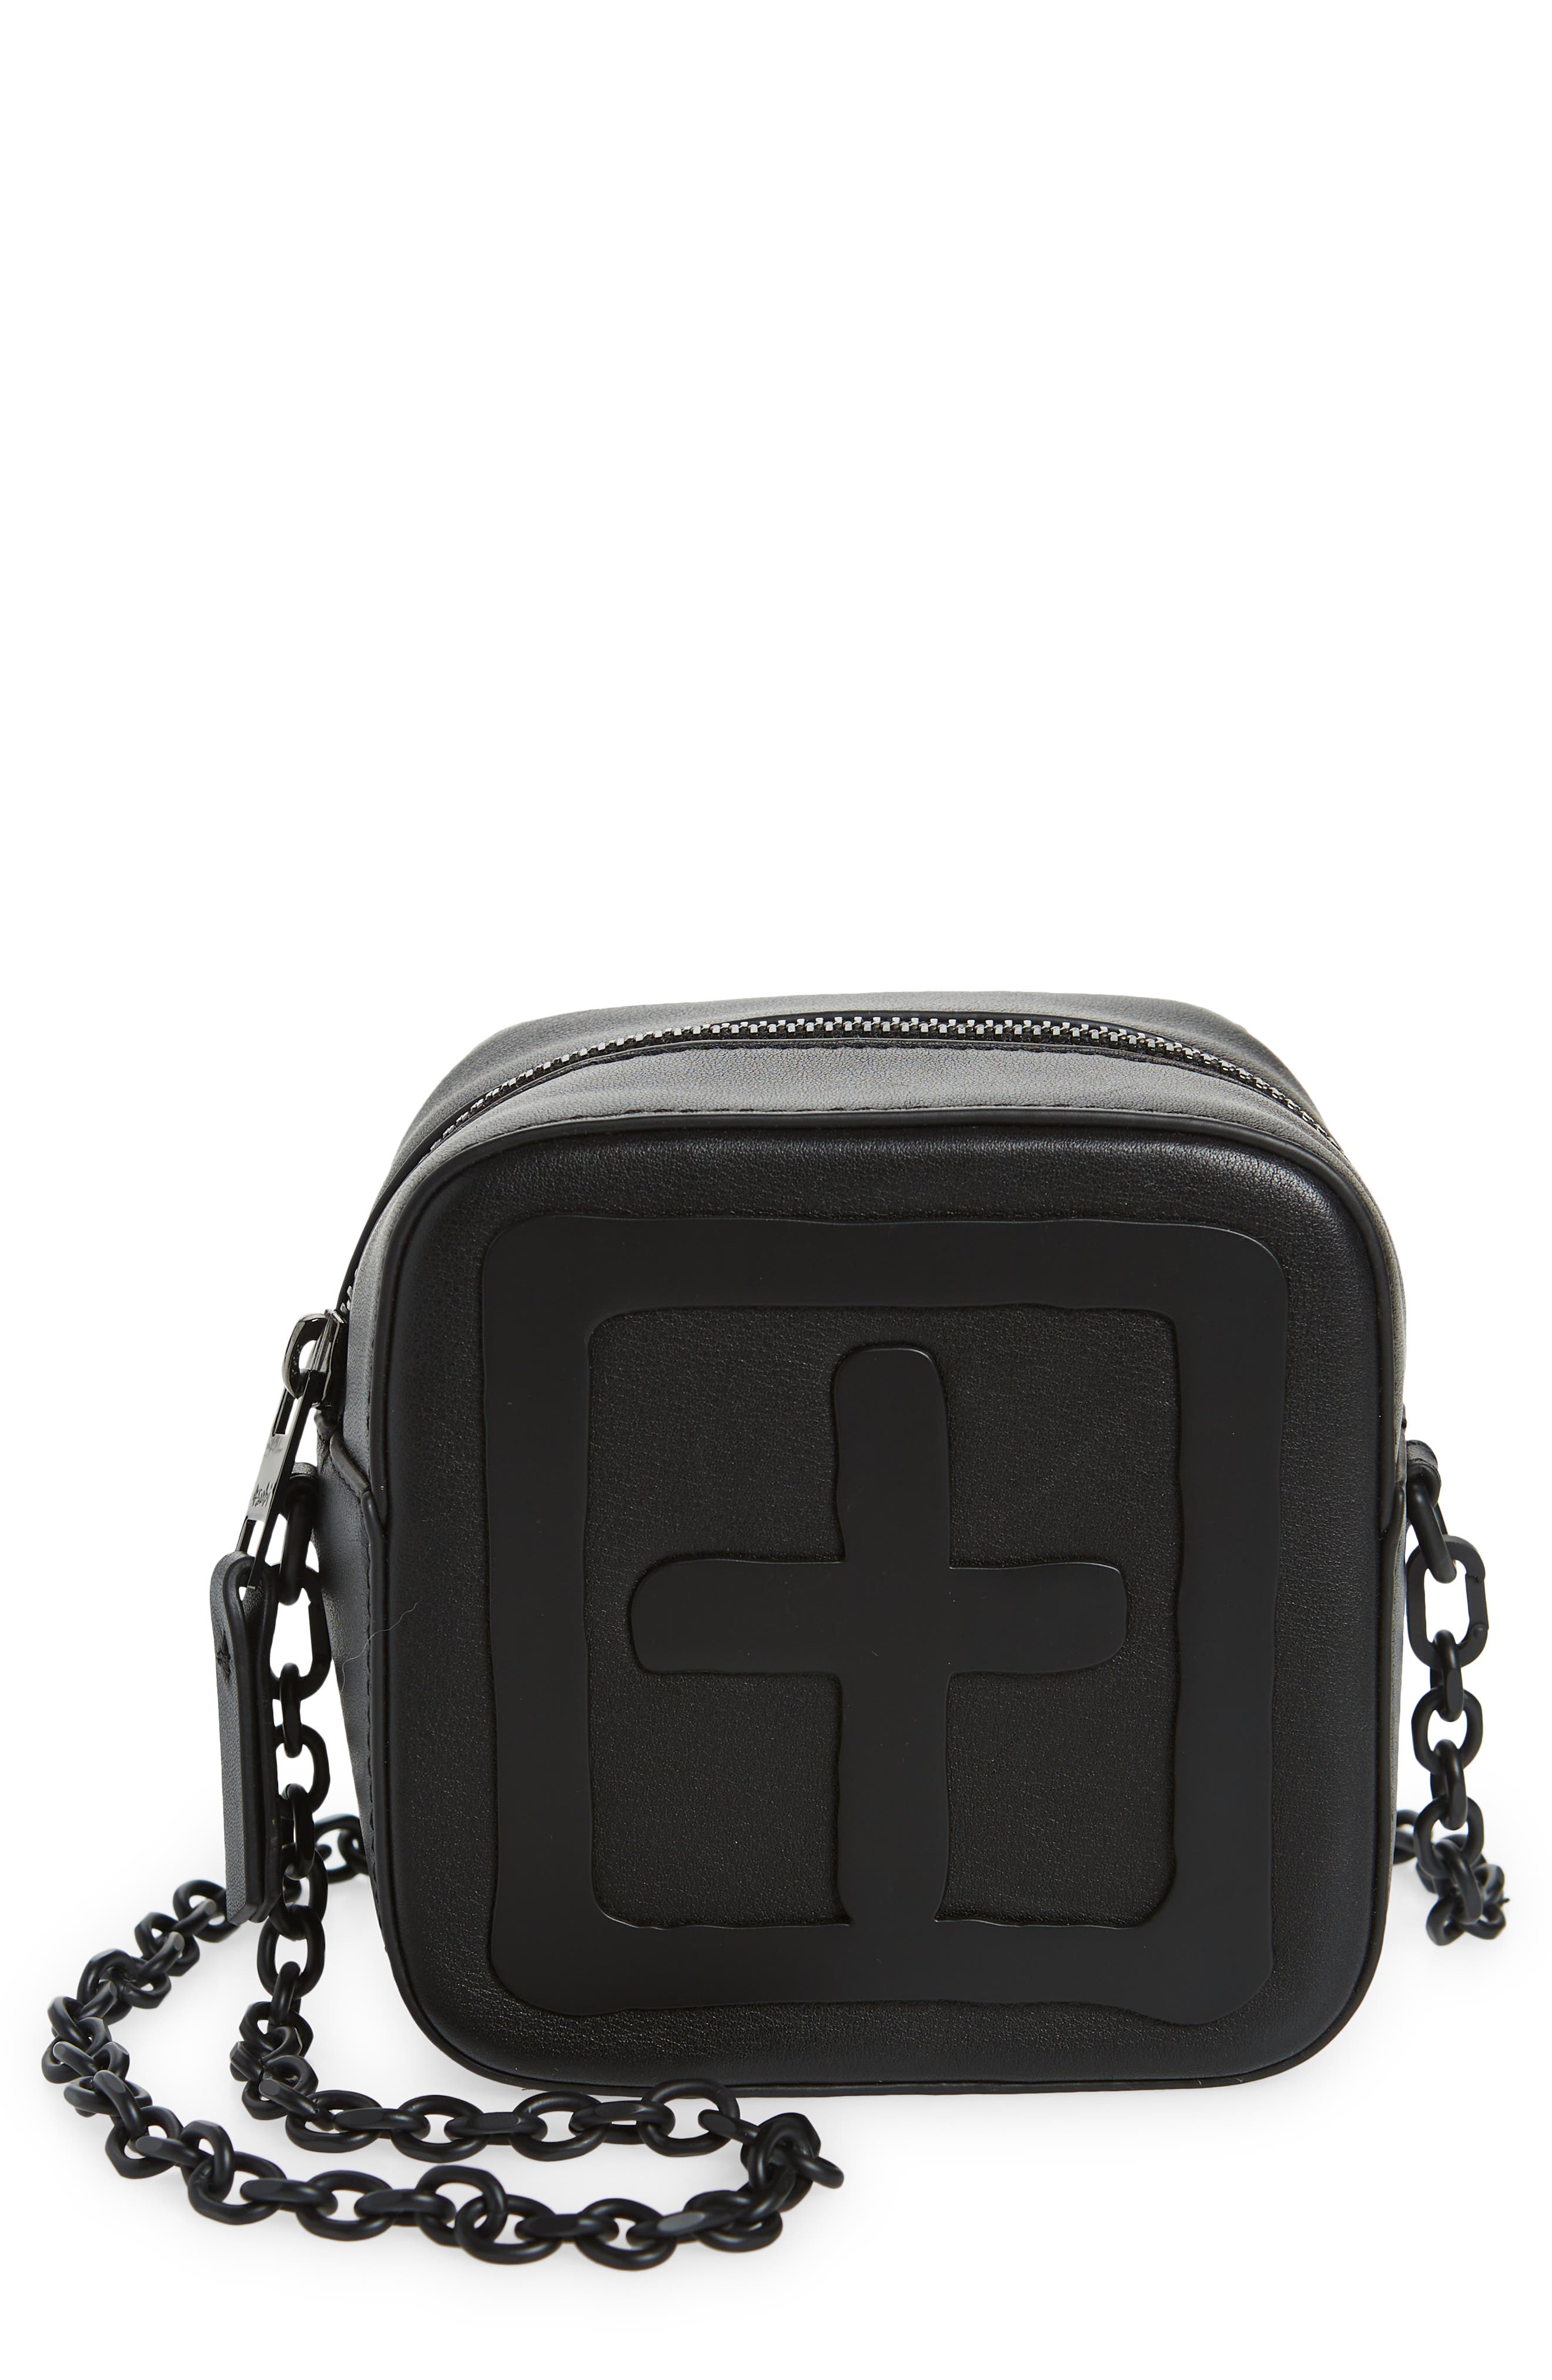 Ksubi Kube Mini Leather Crossbody Bag in Black at Nordstrom